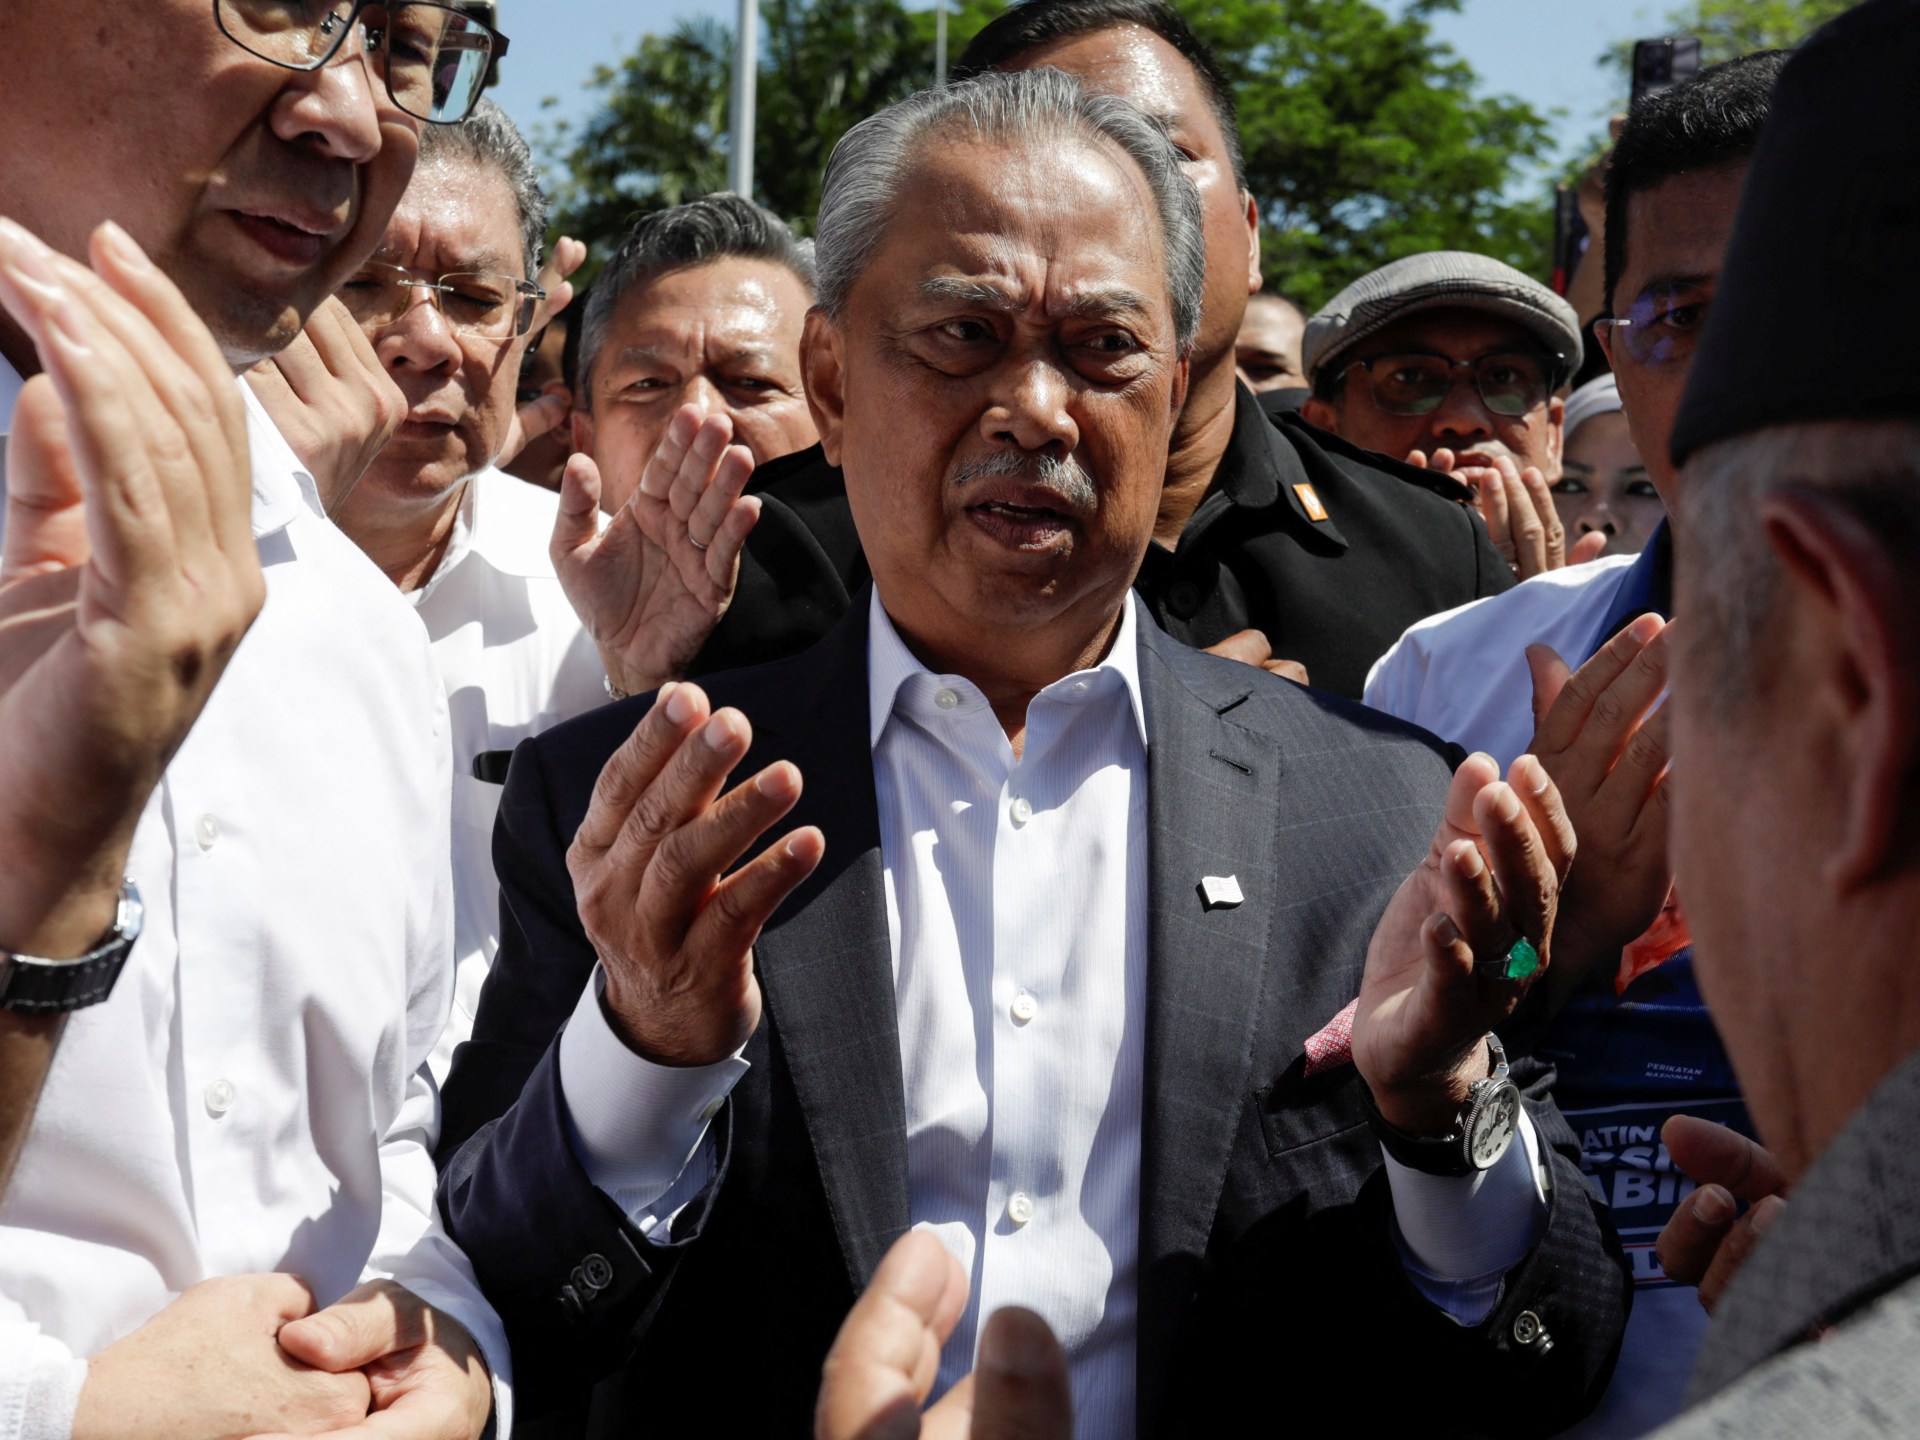 马来西亚前总理穆希丁·亚辛将被控贪污罪 | 腐败新闻